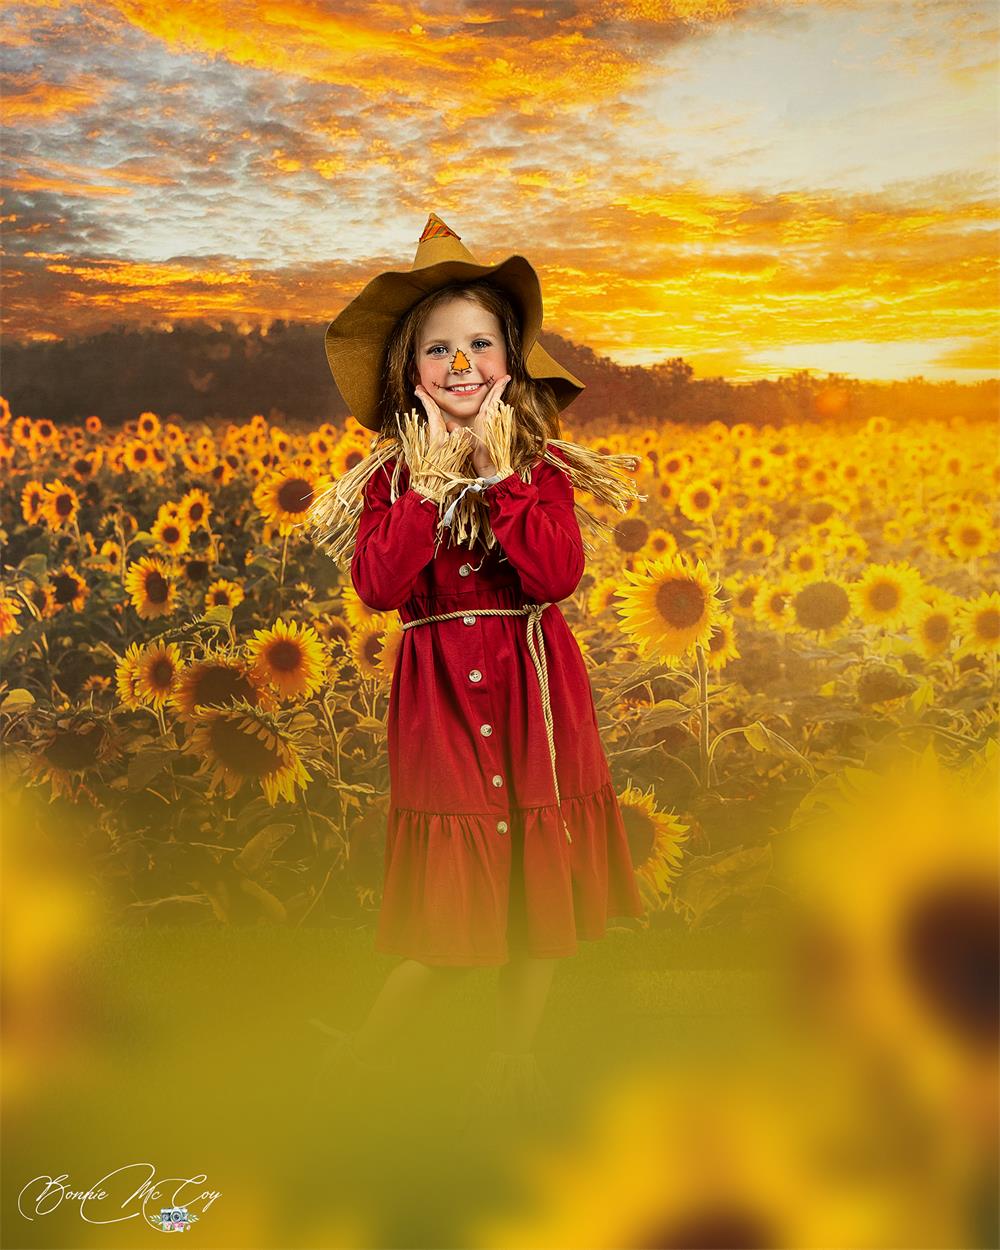 Kate Sommer/Herbst Hintergrund Sonnenblumen Sonnenuntergang von Chain Photography